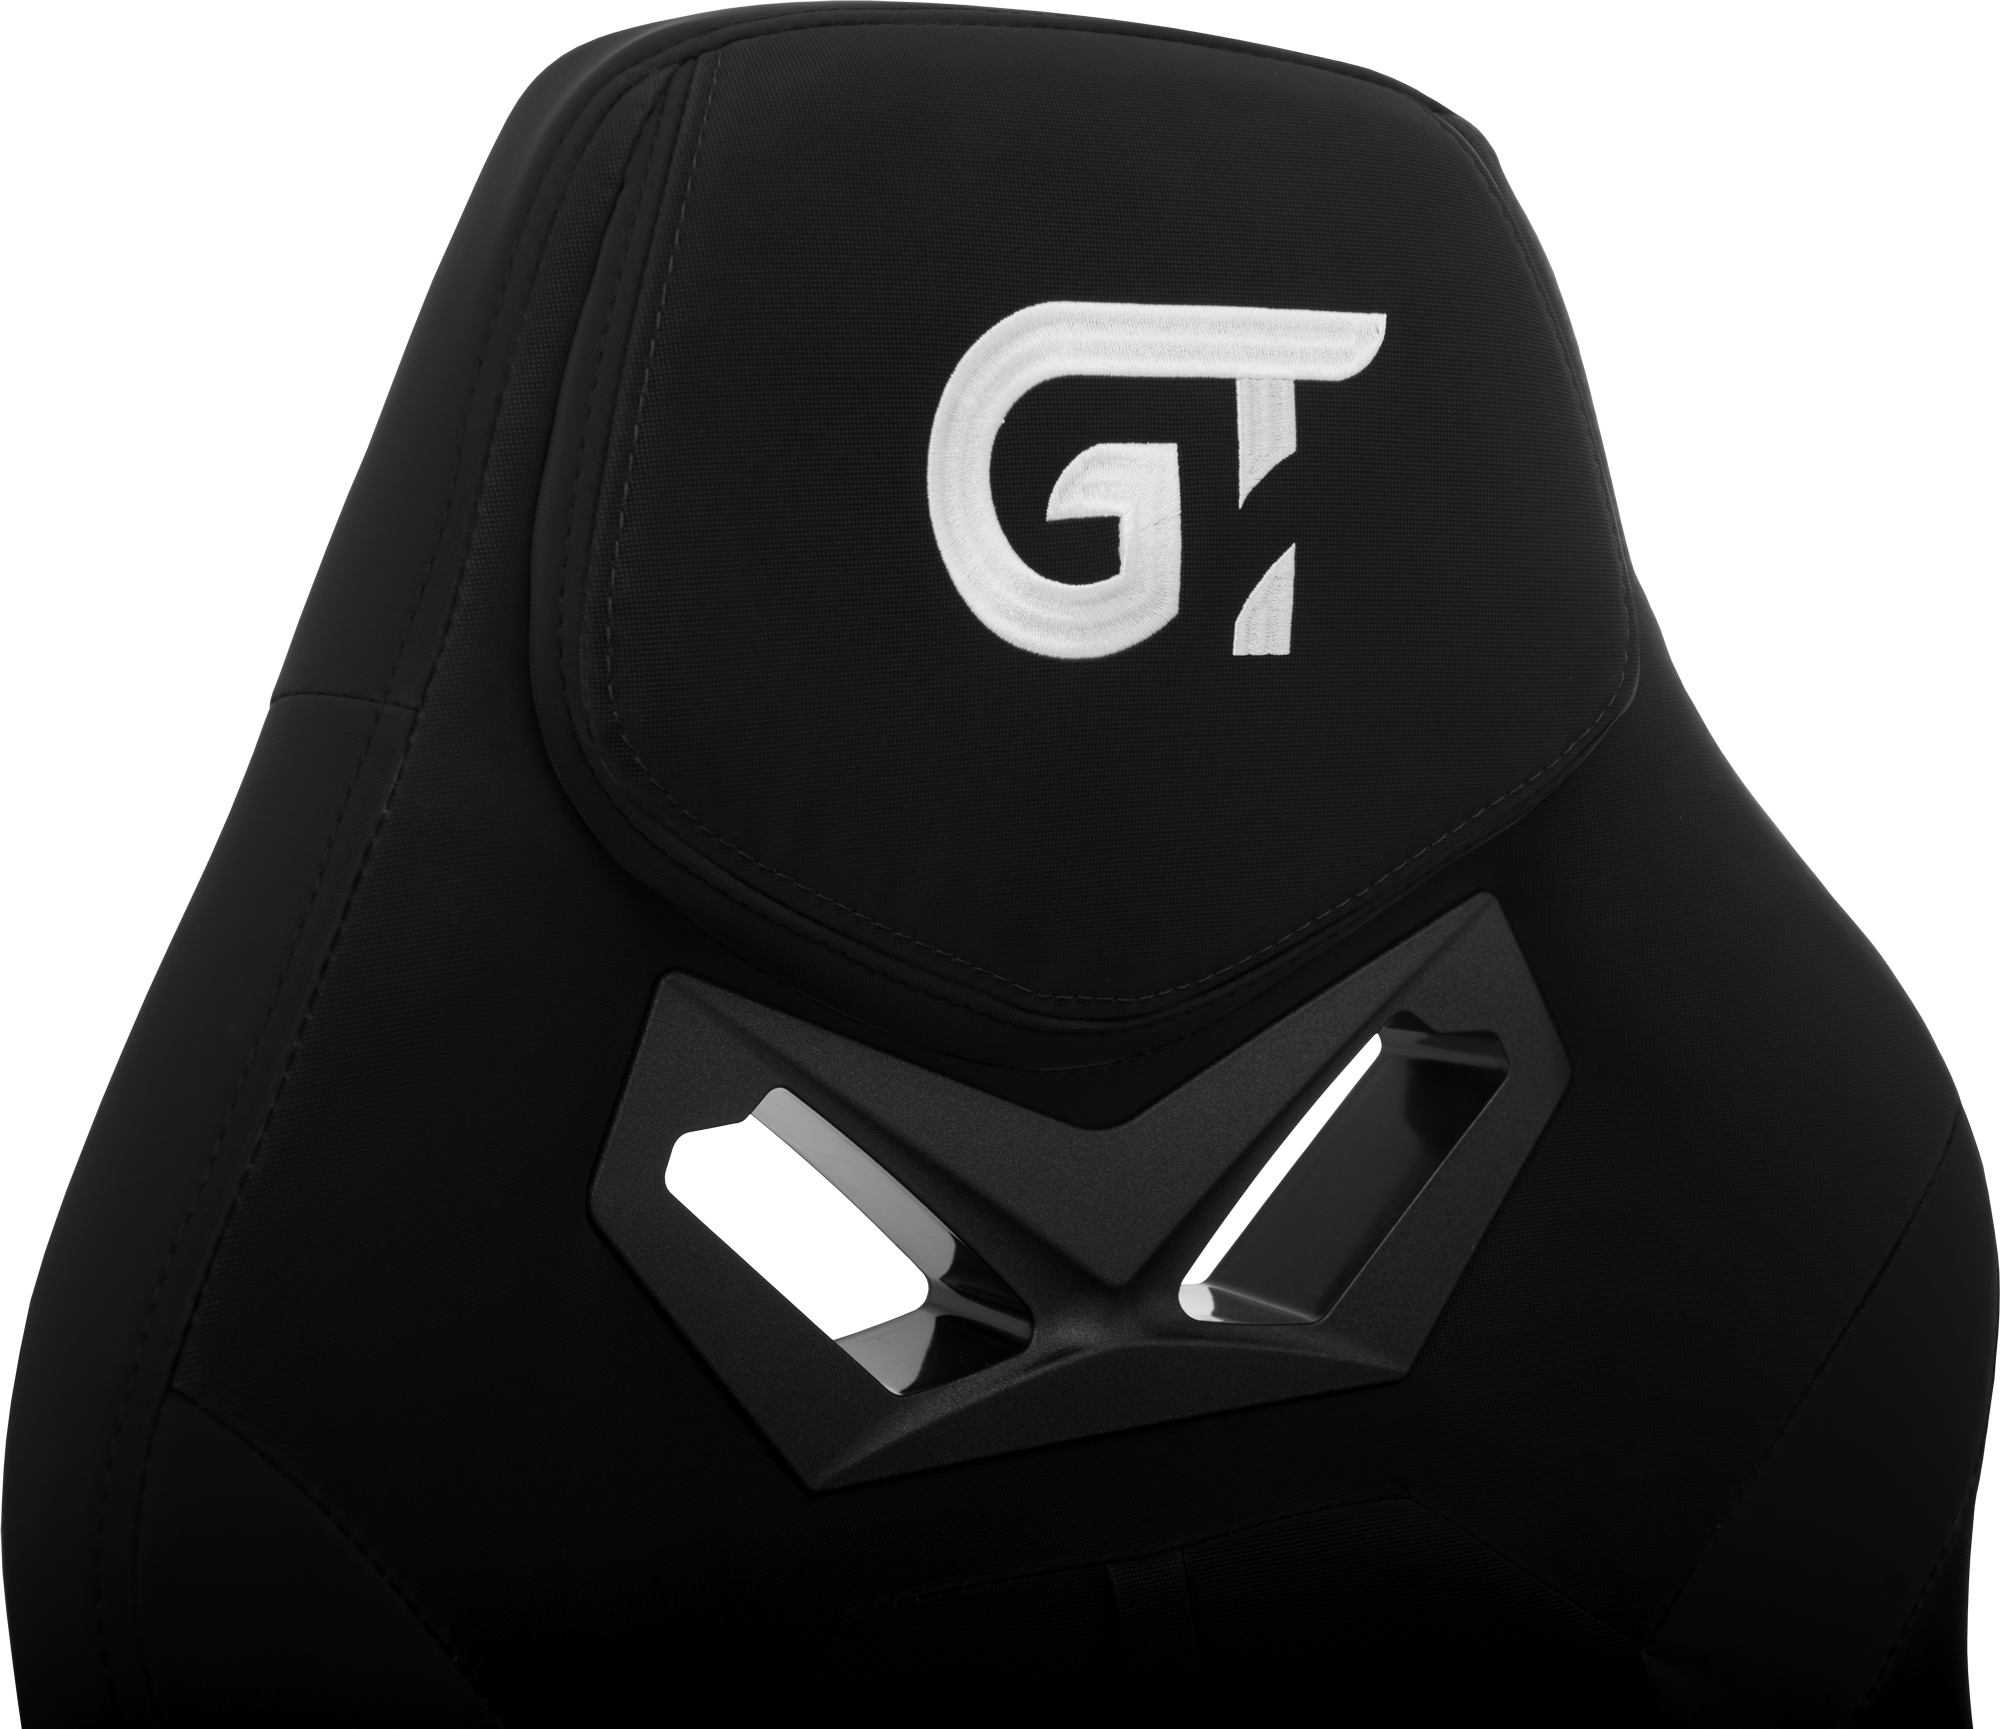 Геймерське крісло GT Racer чорне (X-2656 Black) - фото 10